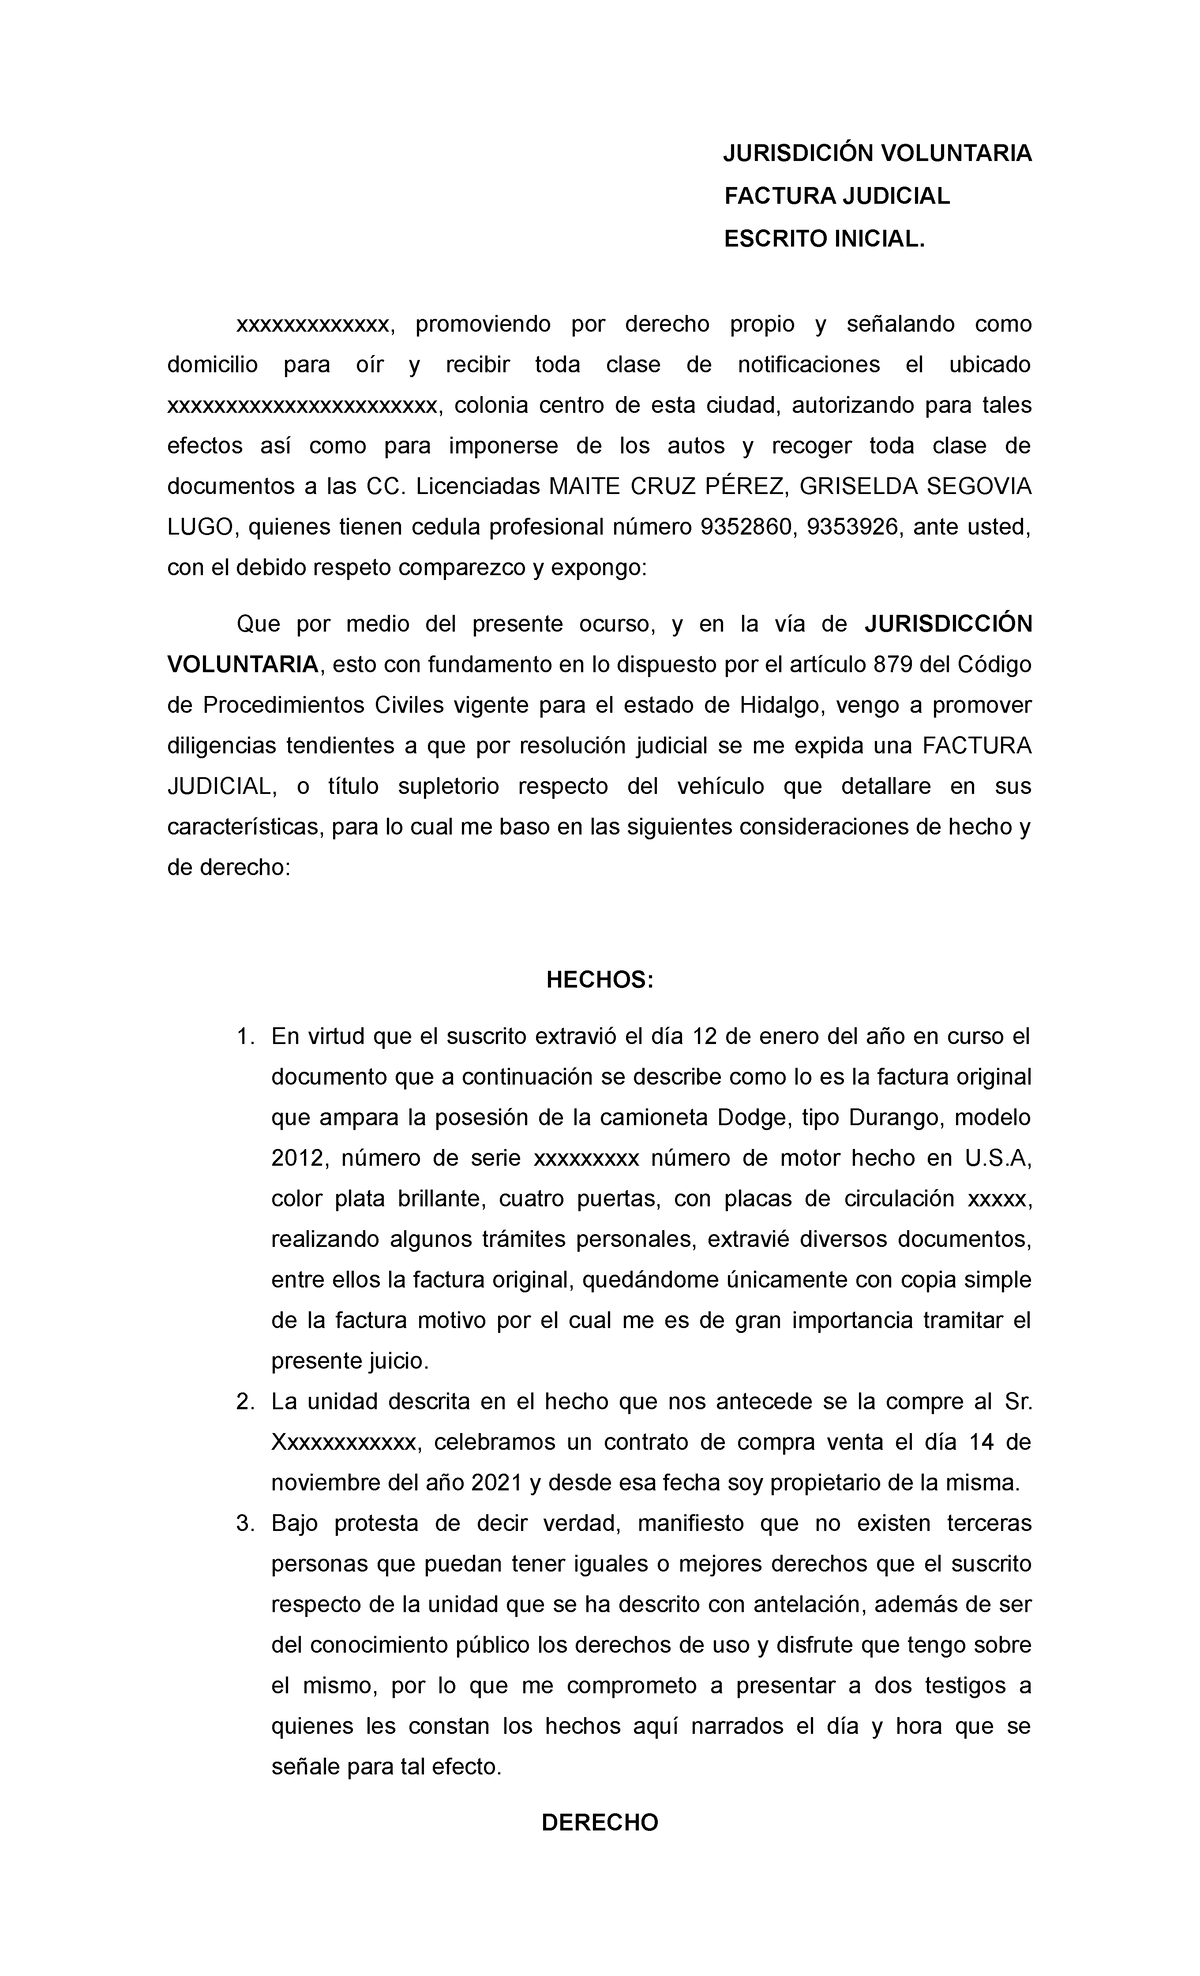 Factura judicial - JURISDICIÓN VOLUNTARIA FACTURA JUDICIAL ESCRITO ...